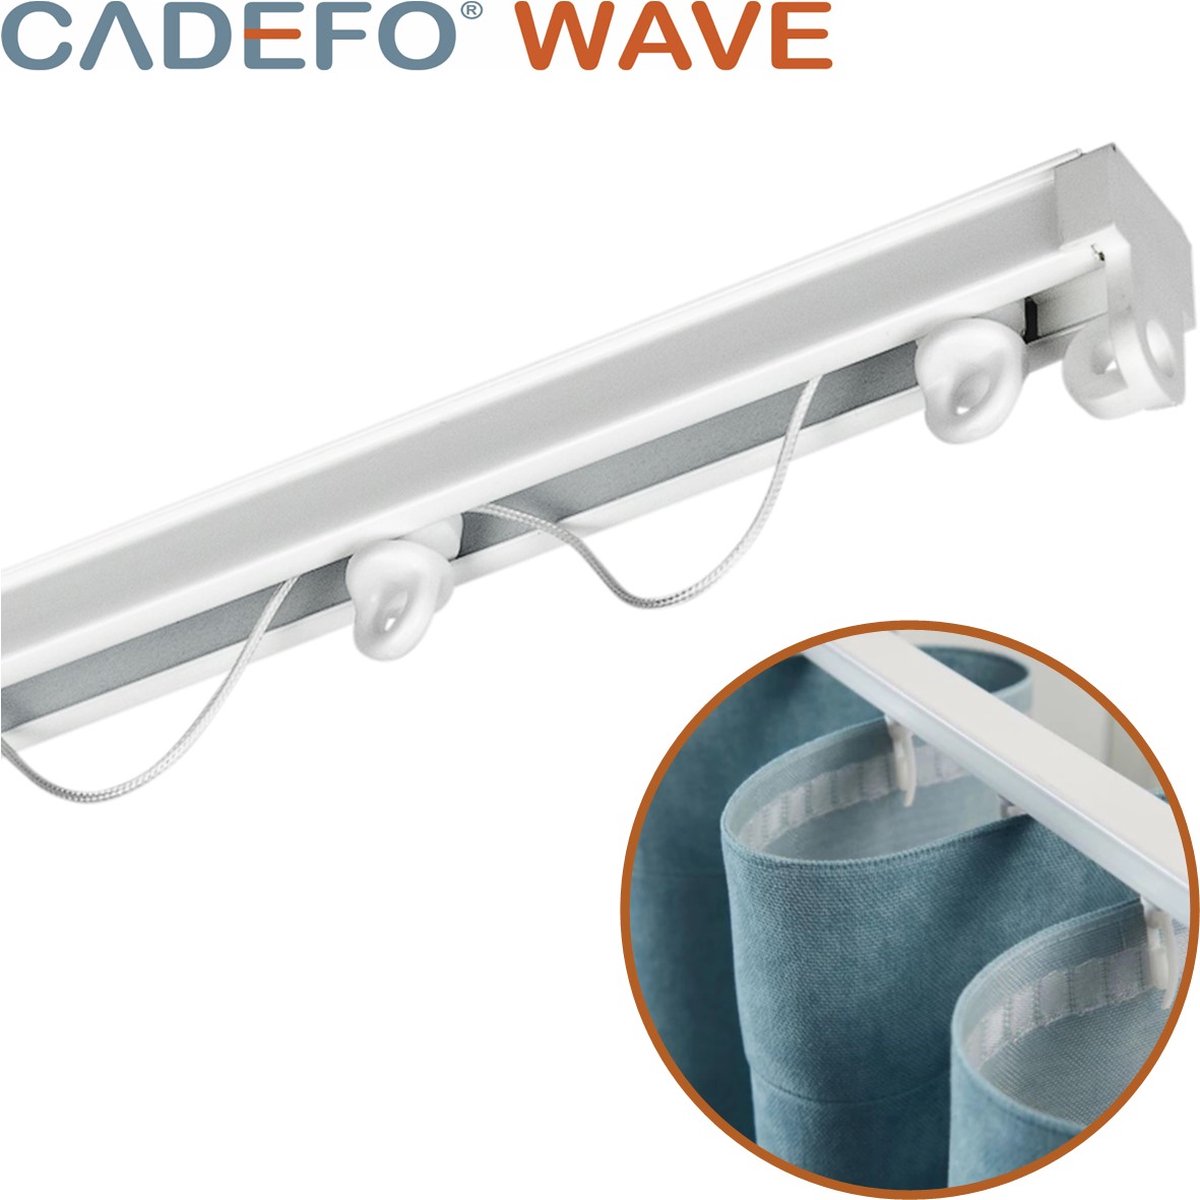 CADEFO WAVE (401 - 450 cm) Gordijnrails - Compleet op maat! - UIT 1 STUK - Leverbaar tot 6 meter - Plafondbevestiging - Lengte 437 cm